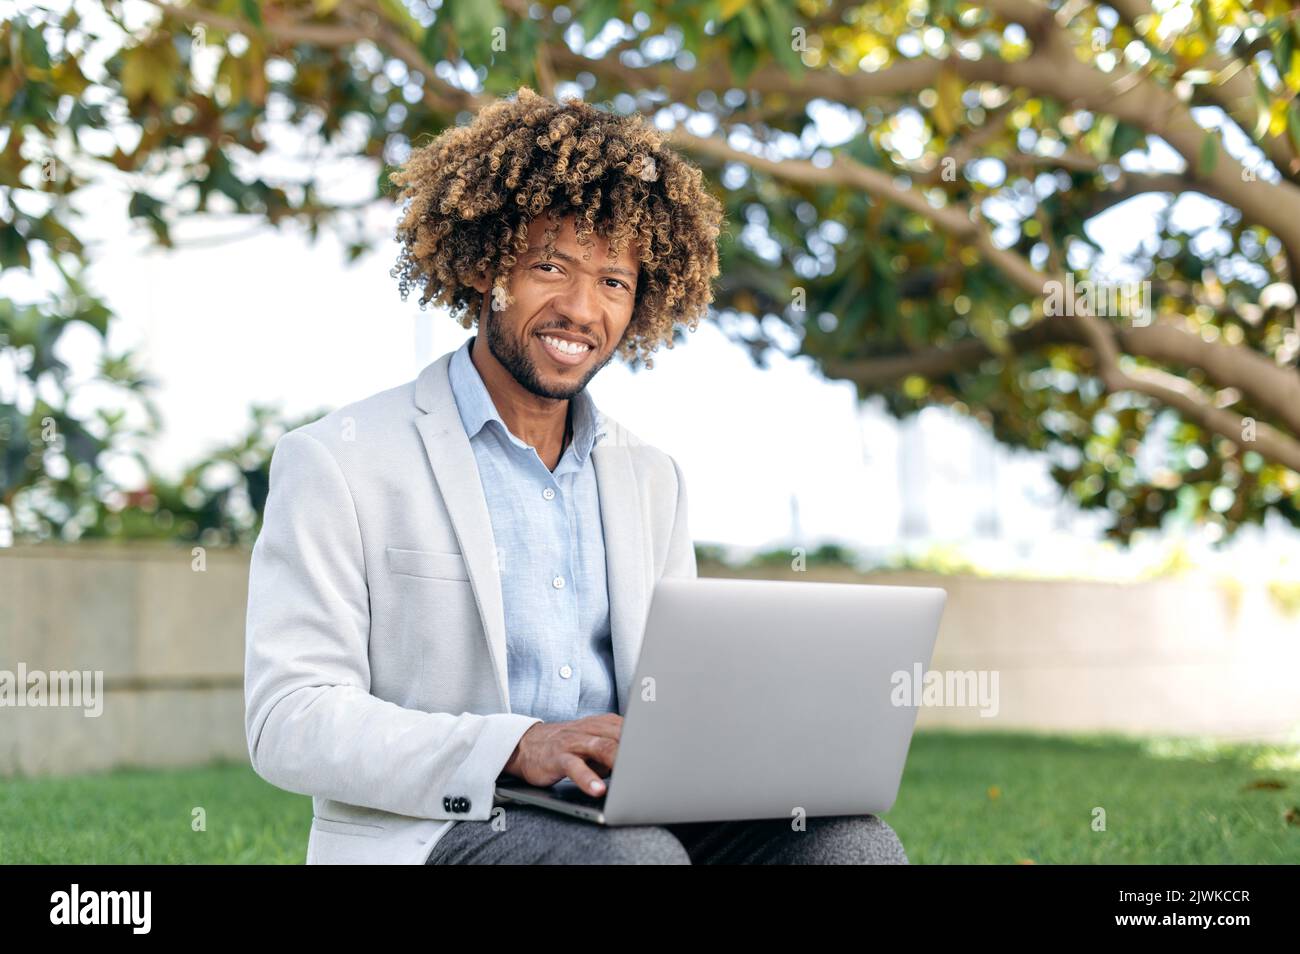 Porträt eines positiven intelligenten erfolgreichen Mixed Race Curly Mann, CEO des Unternehmens, Web-Entwickler, Content Manager, sitzen im Freien mit Laptop, arbeiten online an einem Projekt, Surfen im Internet, schaut auf die Kamera, lächeln Stockfoto